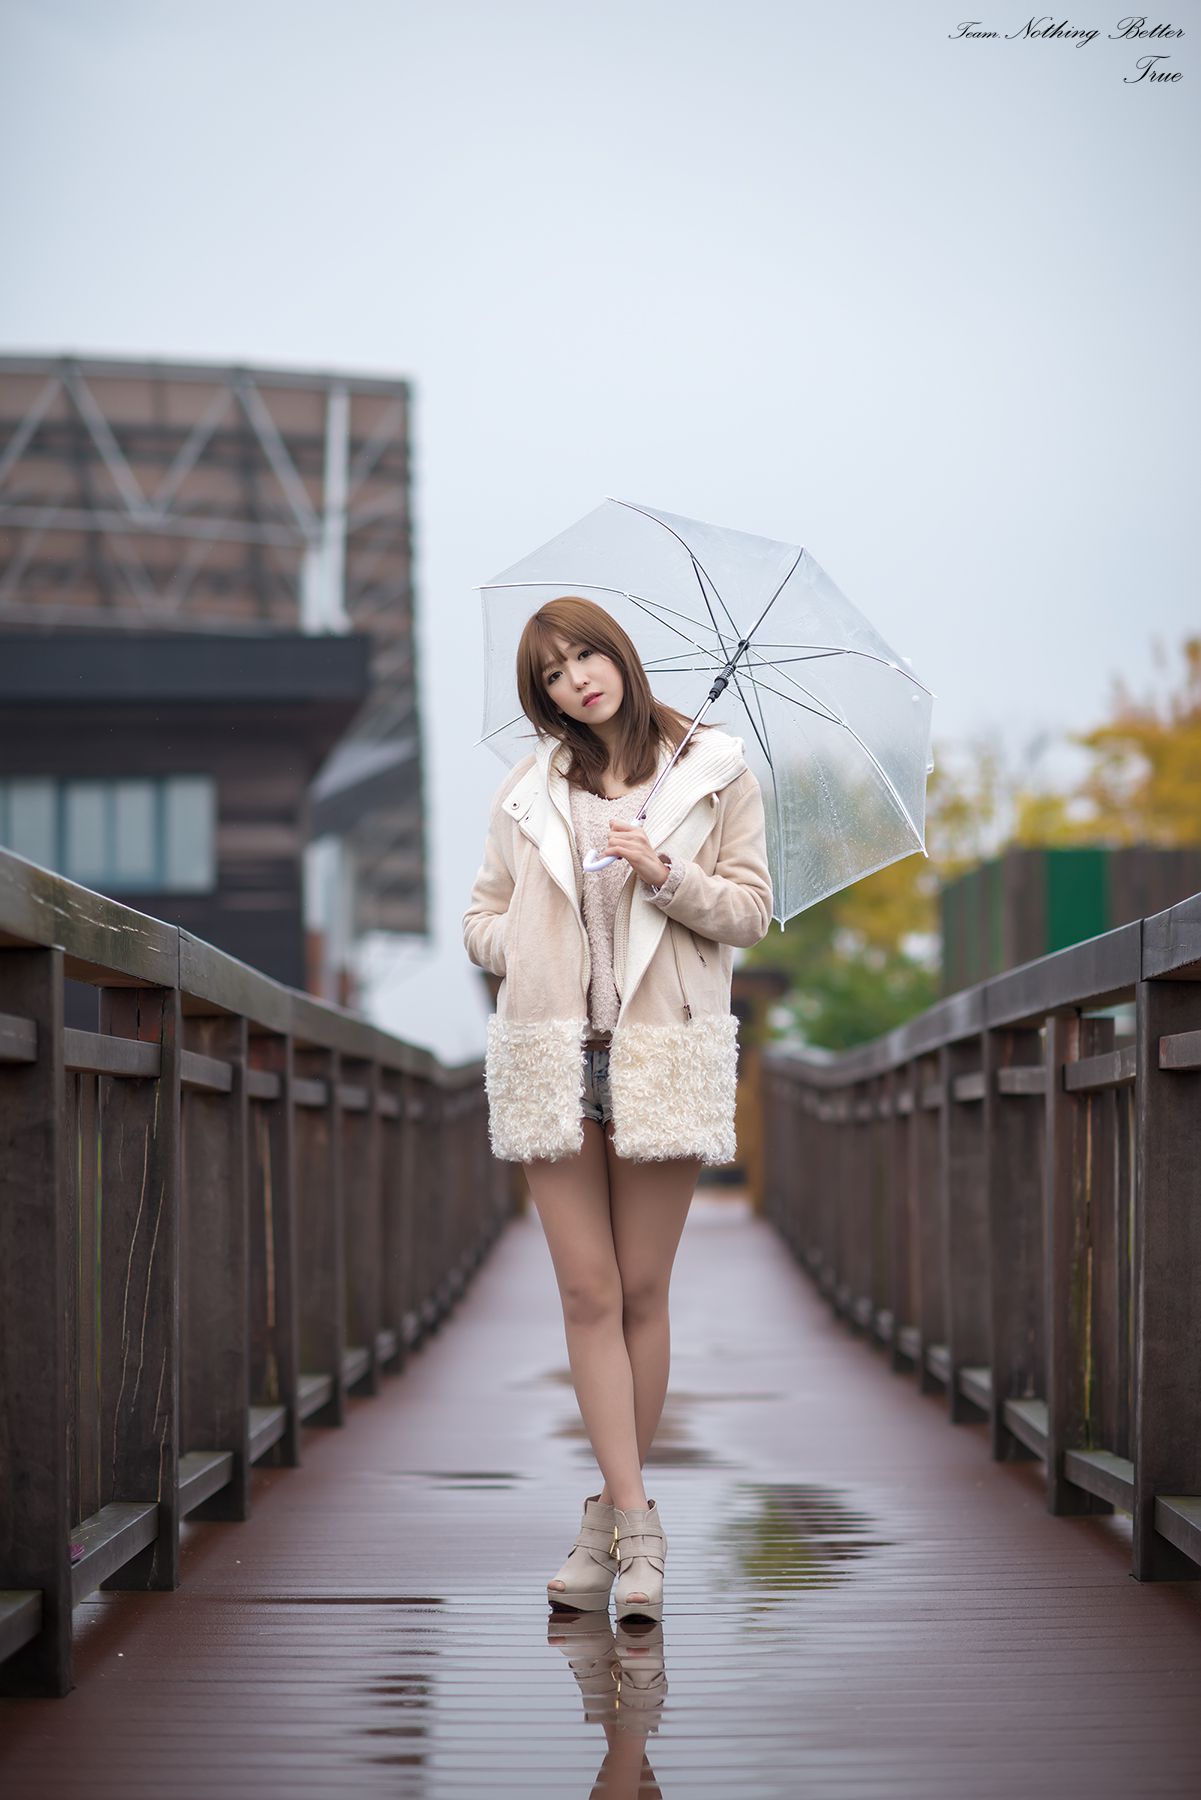 极品韩国美女李恩慧《下雨天街拍》  第9张